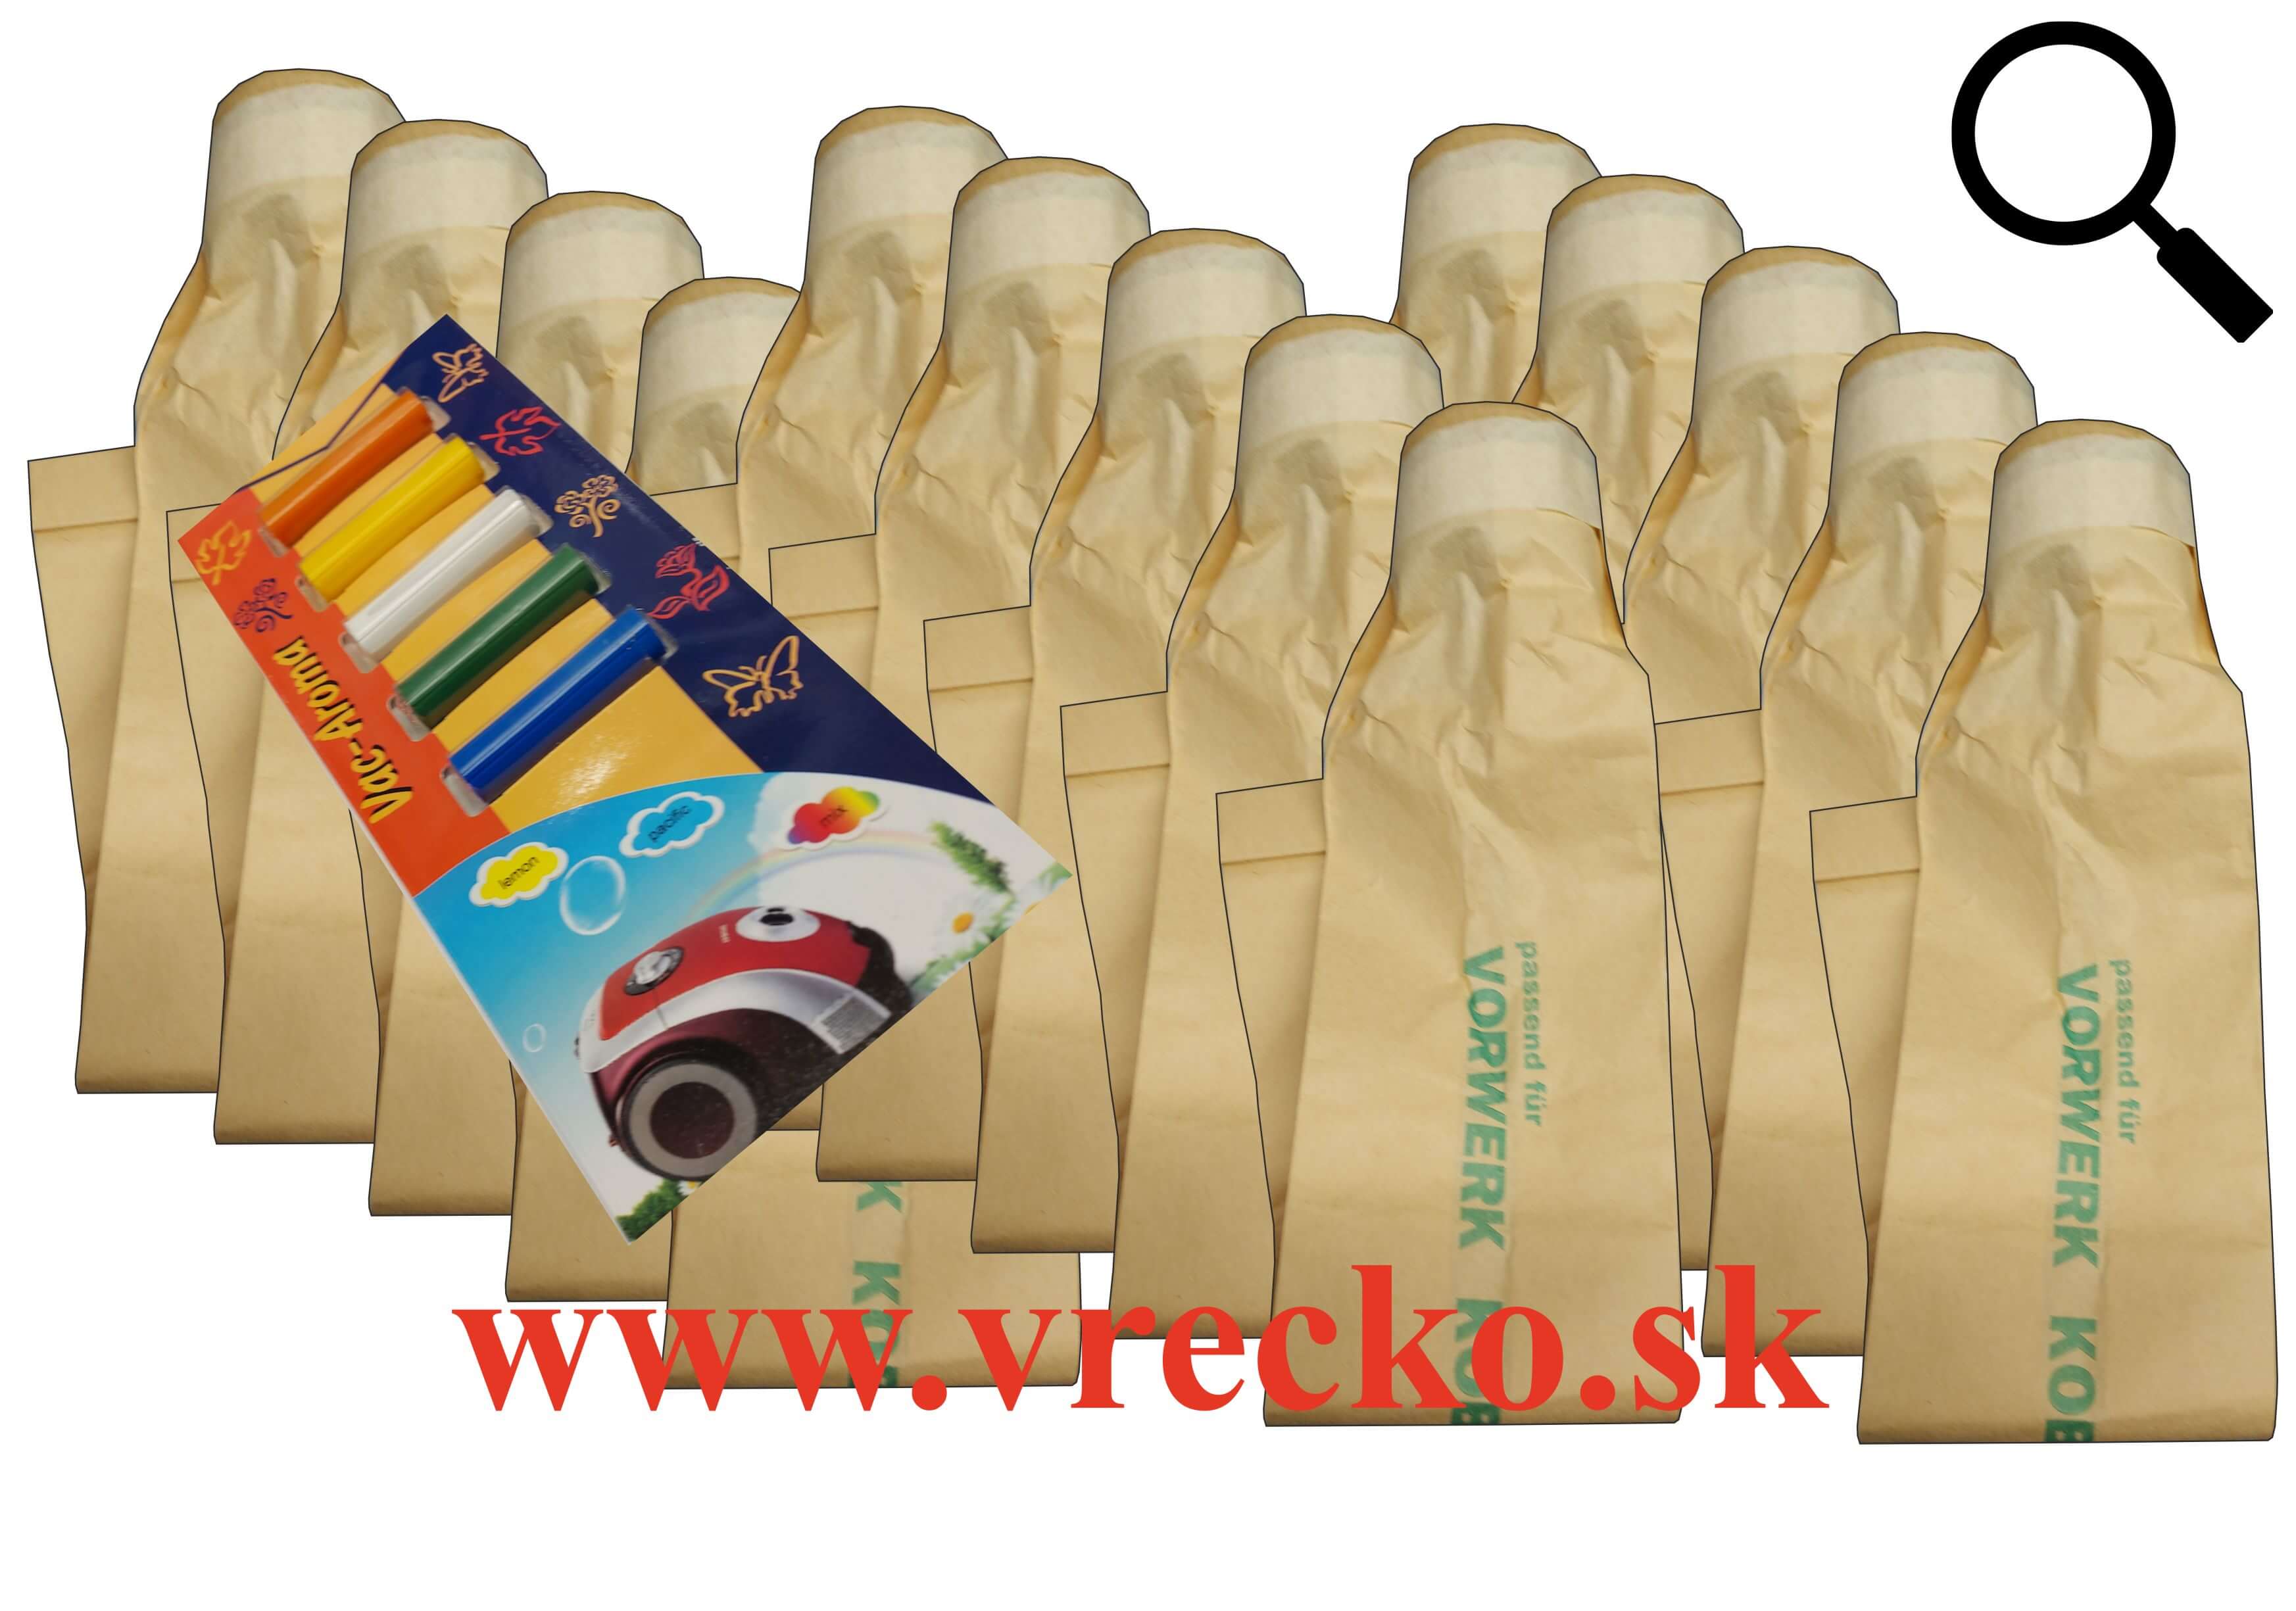 Vorwerk Folleto VK 116 - XL zvýhodnené balenie papierových vreciek do vysávača + 5 ks vôní do vysávačov MIX ZDARMA za cenu 3,99 (celkovo vreciek 15 ks)